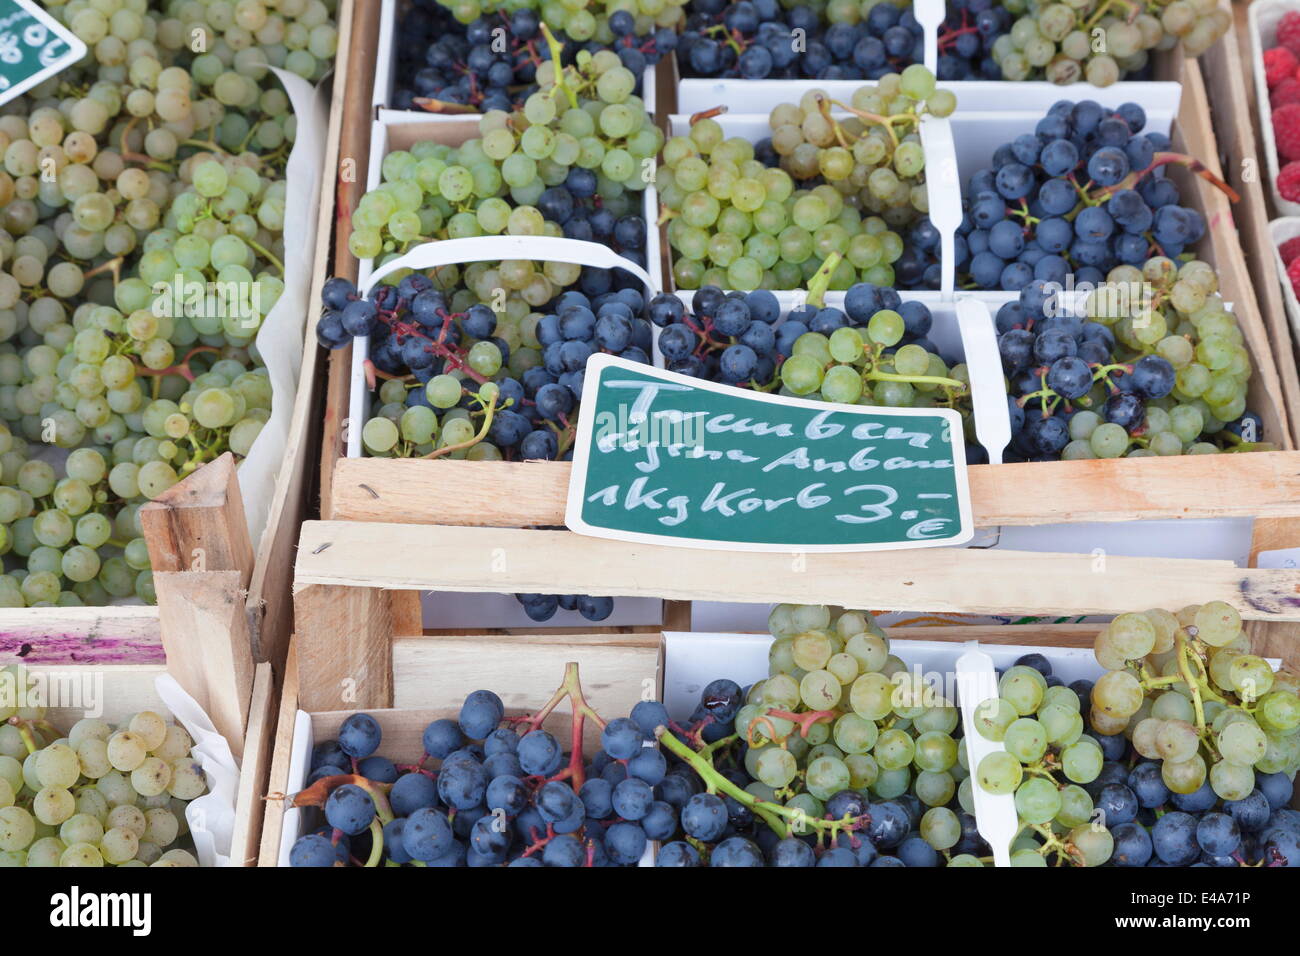 Les raisins pour le vin blanc et bleu at a market stall, marché hebdomadaire, marché, Esslingen, Baden Wurtemberg, Allemagne, Europe Banque D'Images